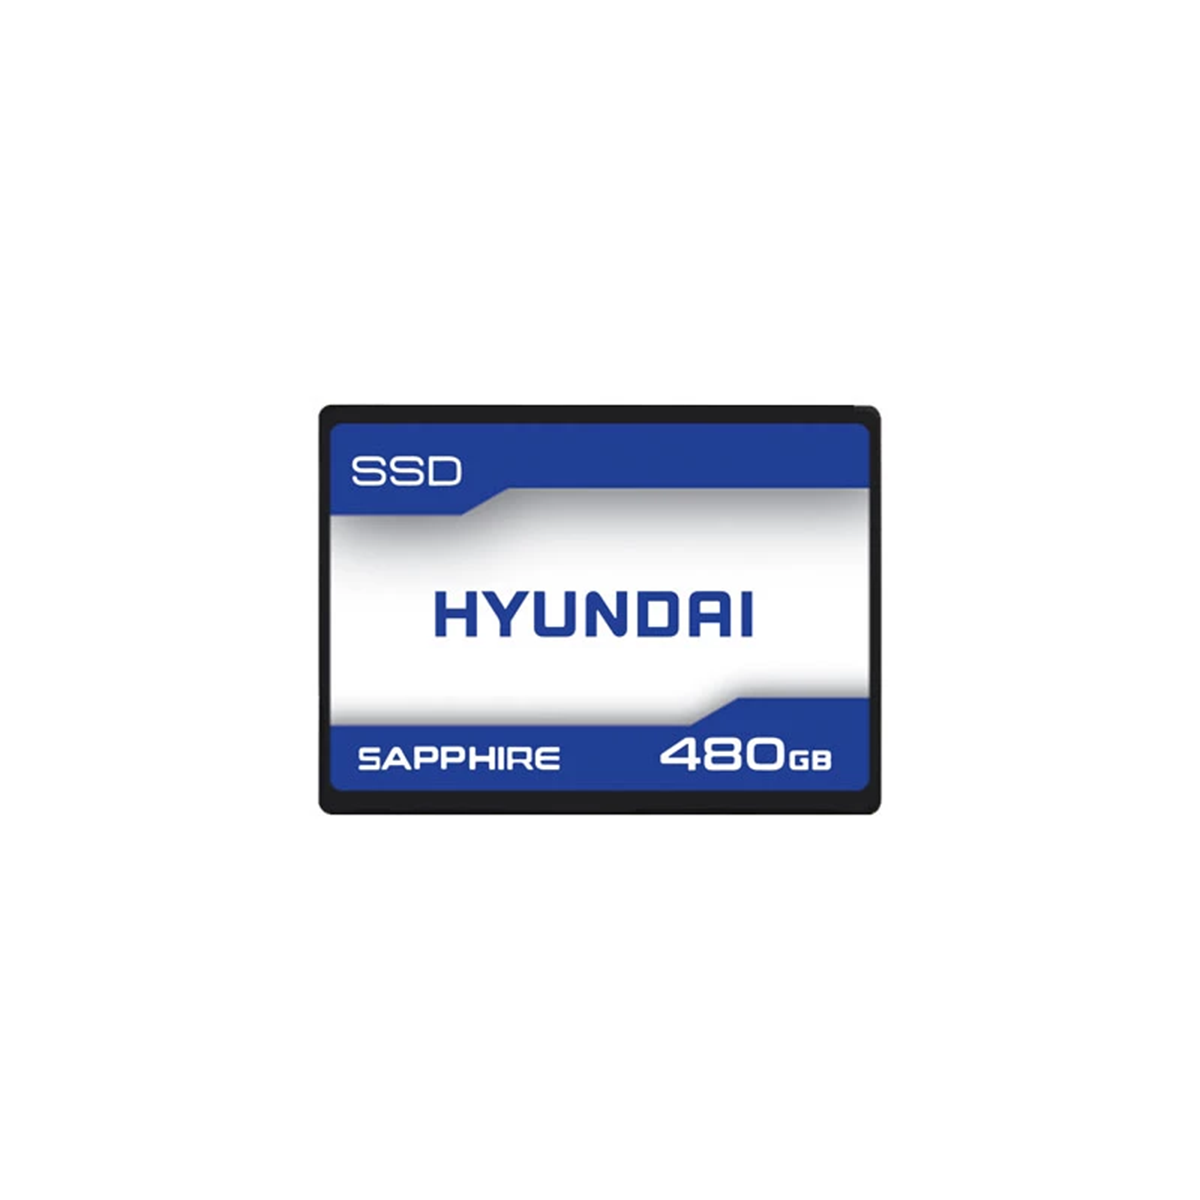 هارد اس اس دی اینترنال هیوندای مدل SAPPHIRE ظرفیت 480 گیگابایت